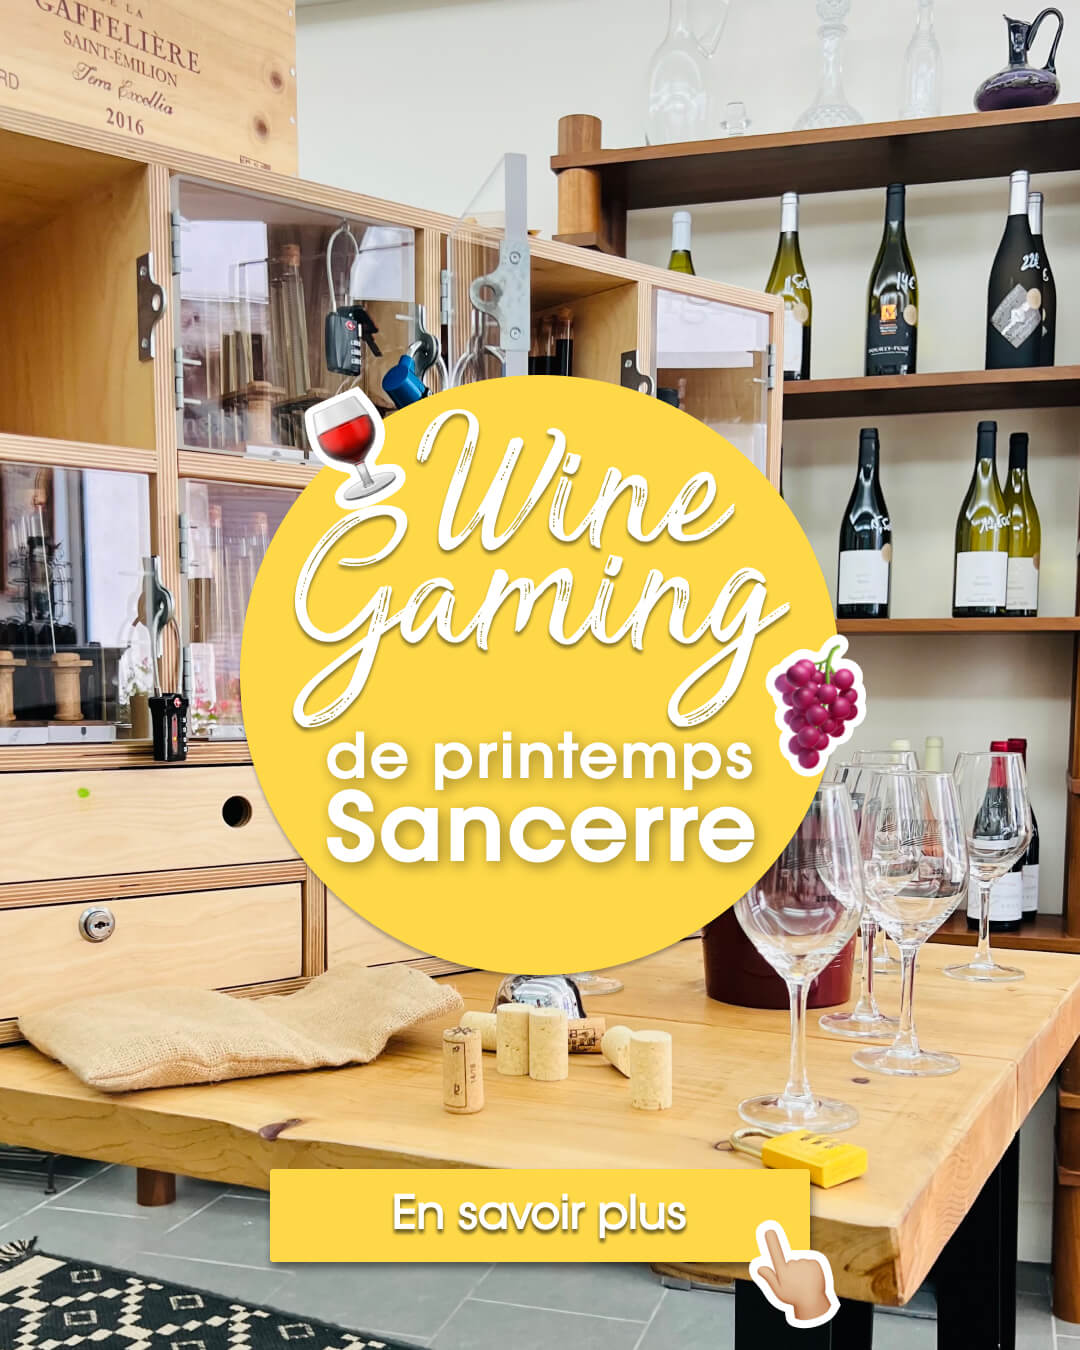 Le Wine Gaming est désormais ouvert à tous, à Sancerre, chez notre ami Raphaël, vinothécaire chez VUE sur Vignes. Venez relever le défi du meilleur escape game oenoludique de la région pour découvrir le monde de façon ludique et décomplexée.